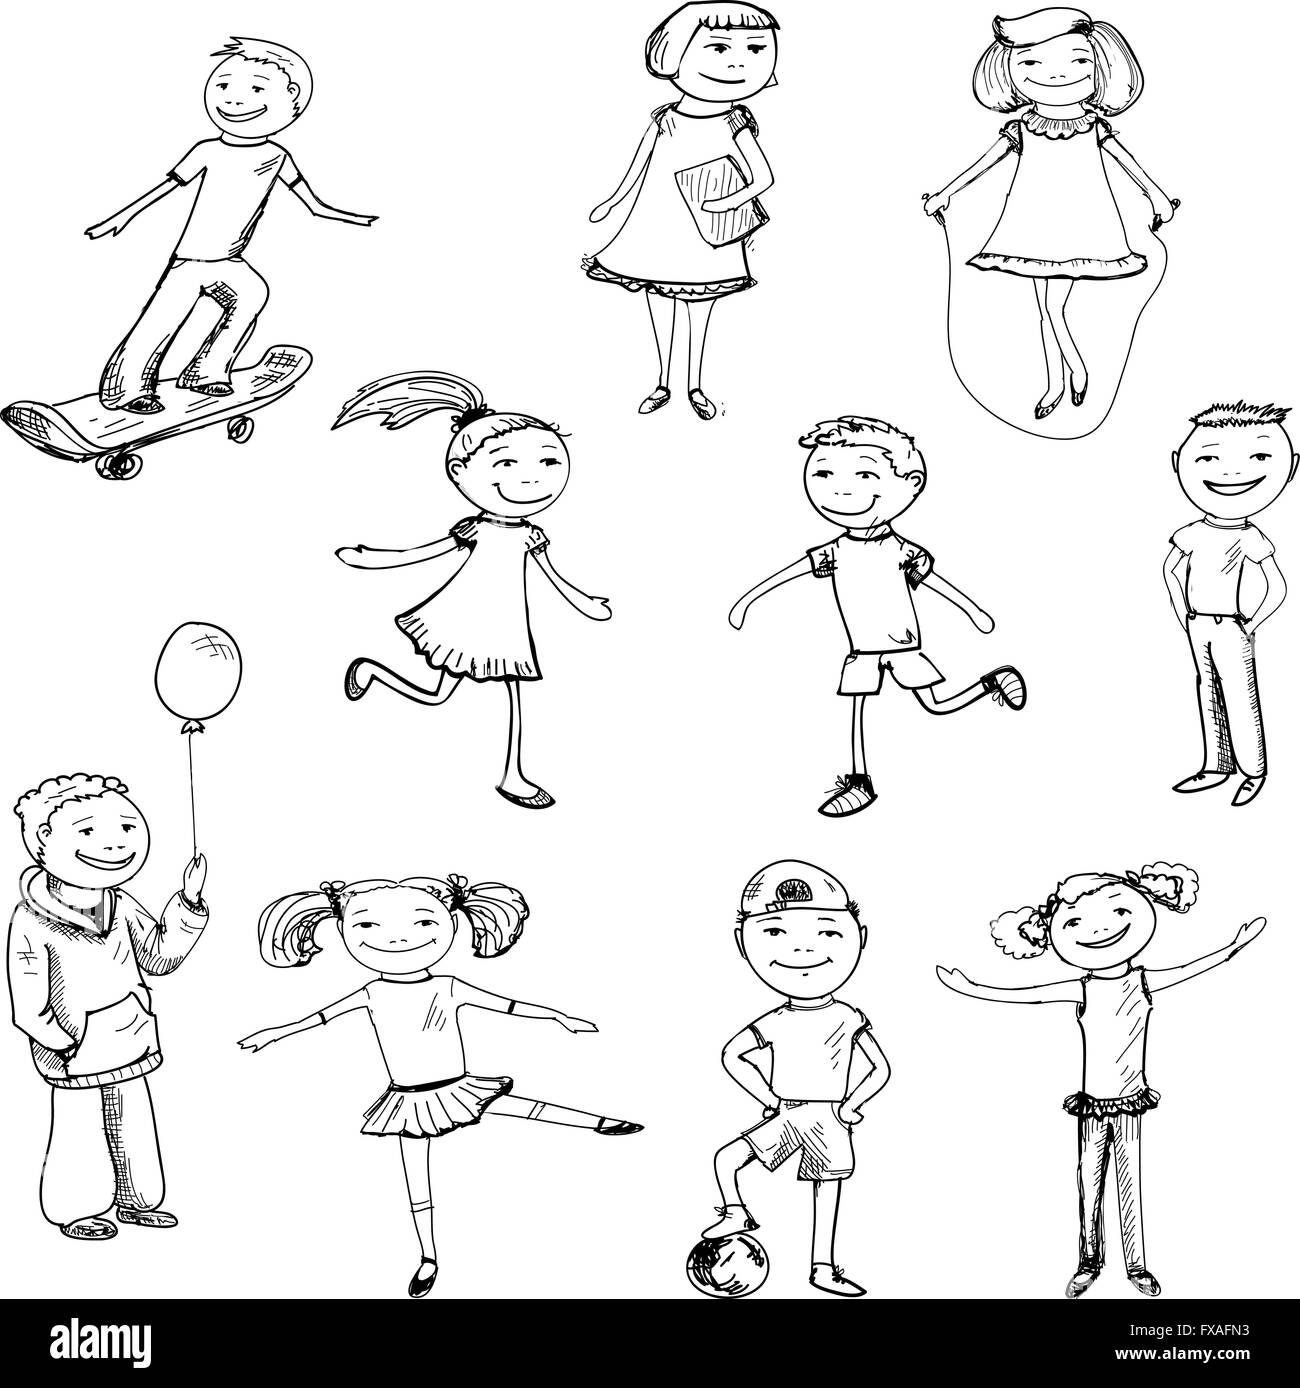 Children characters sketch Stock Vector